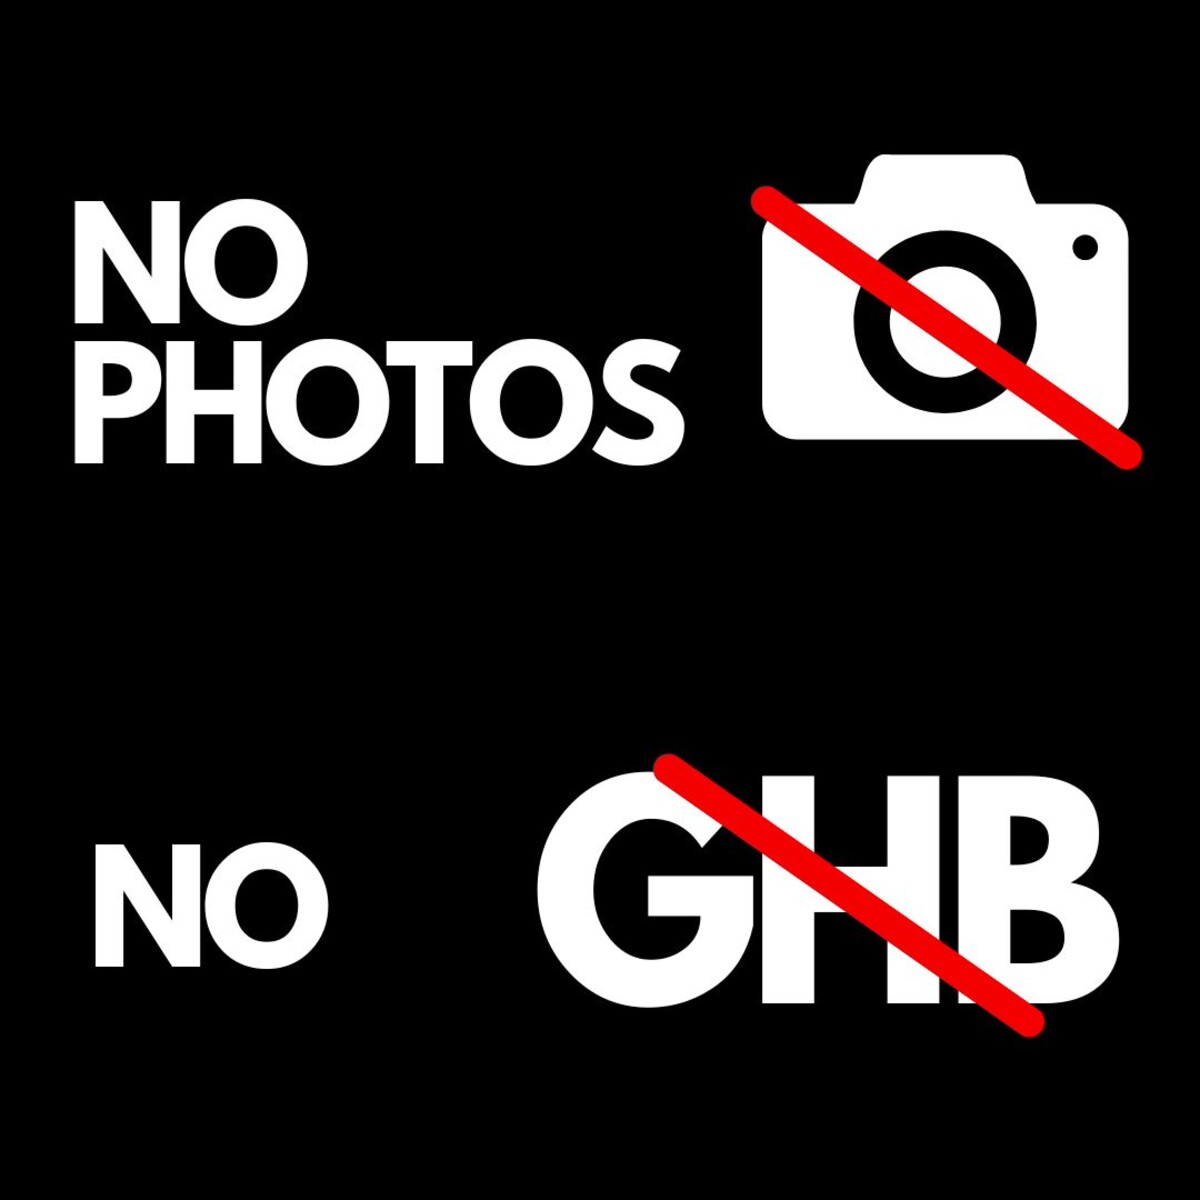 No photos, no GHB.